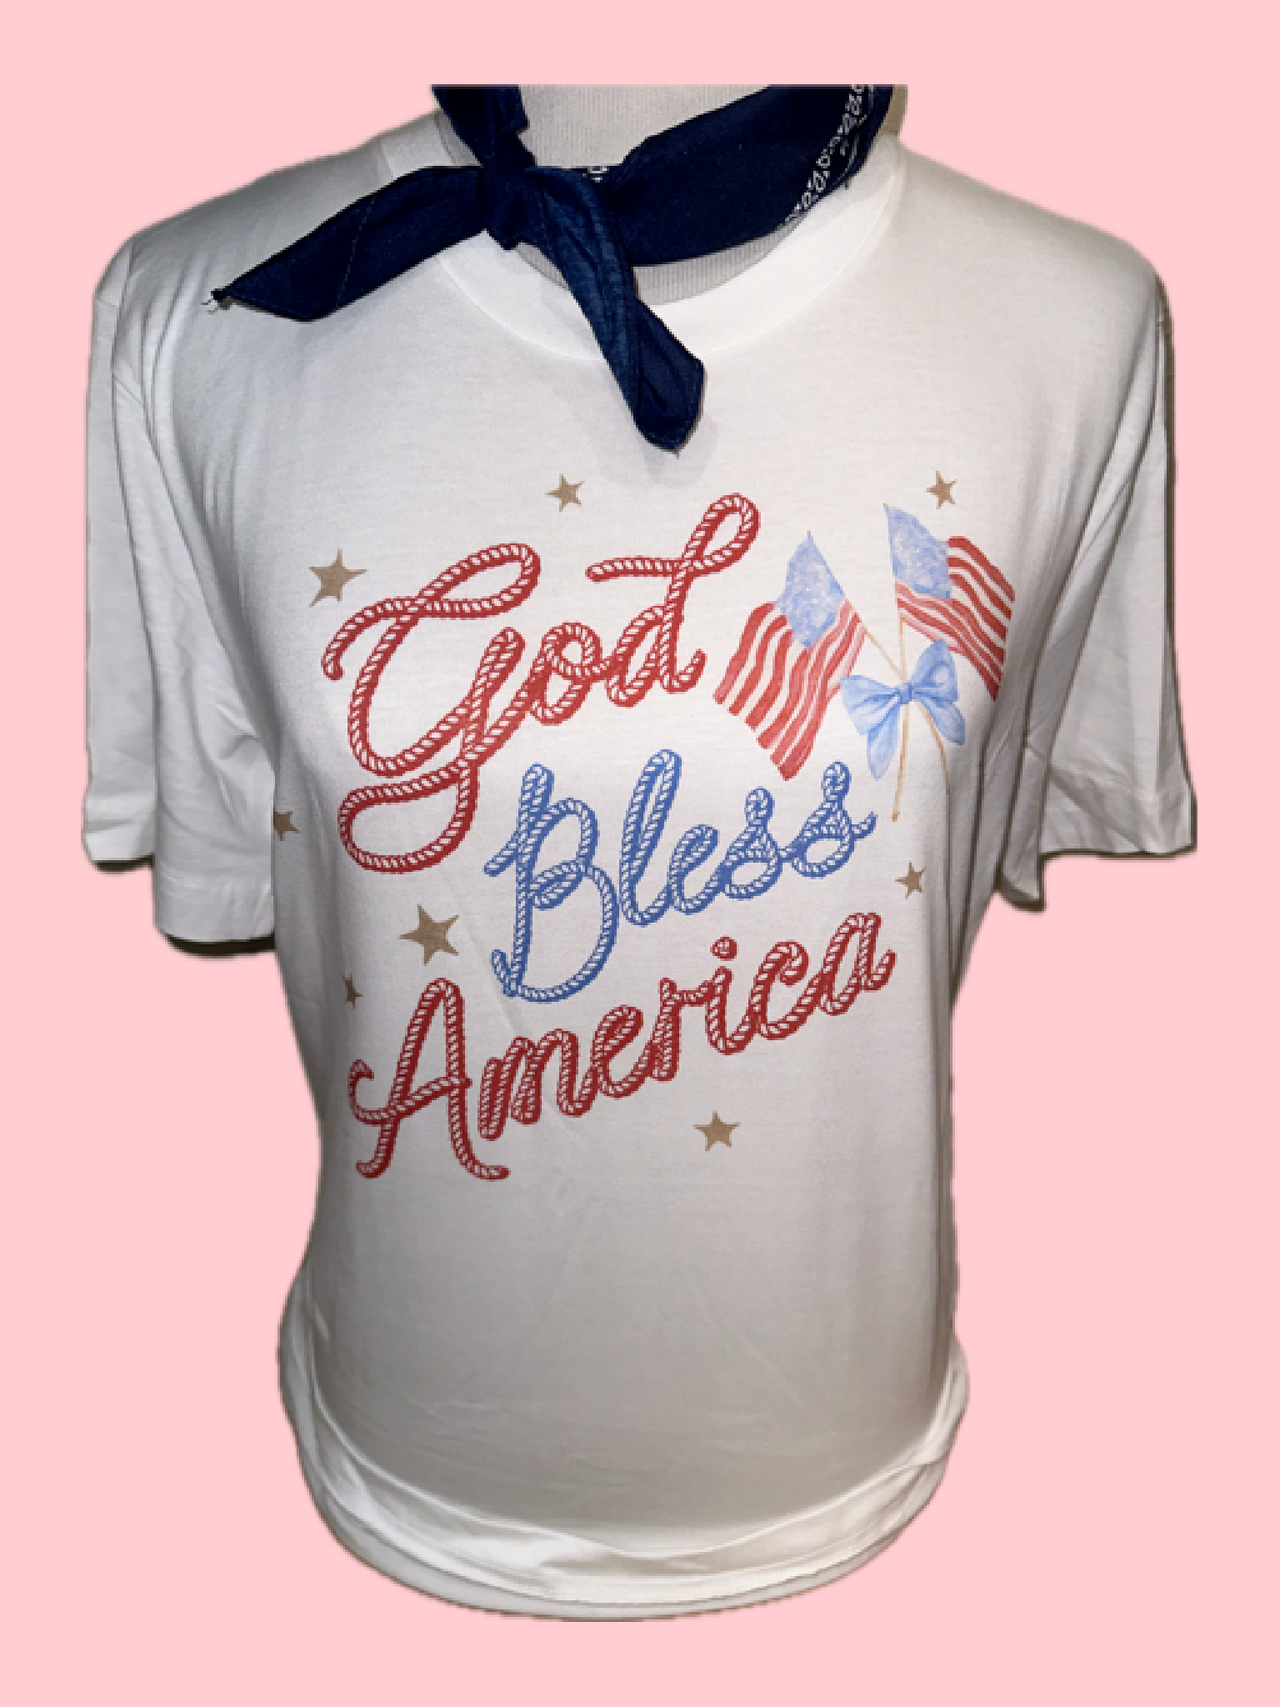 God Bless America T shirt